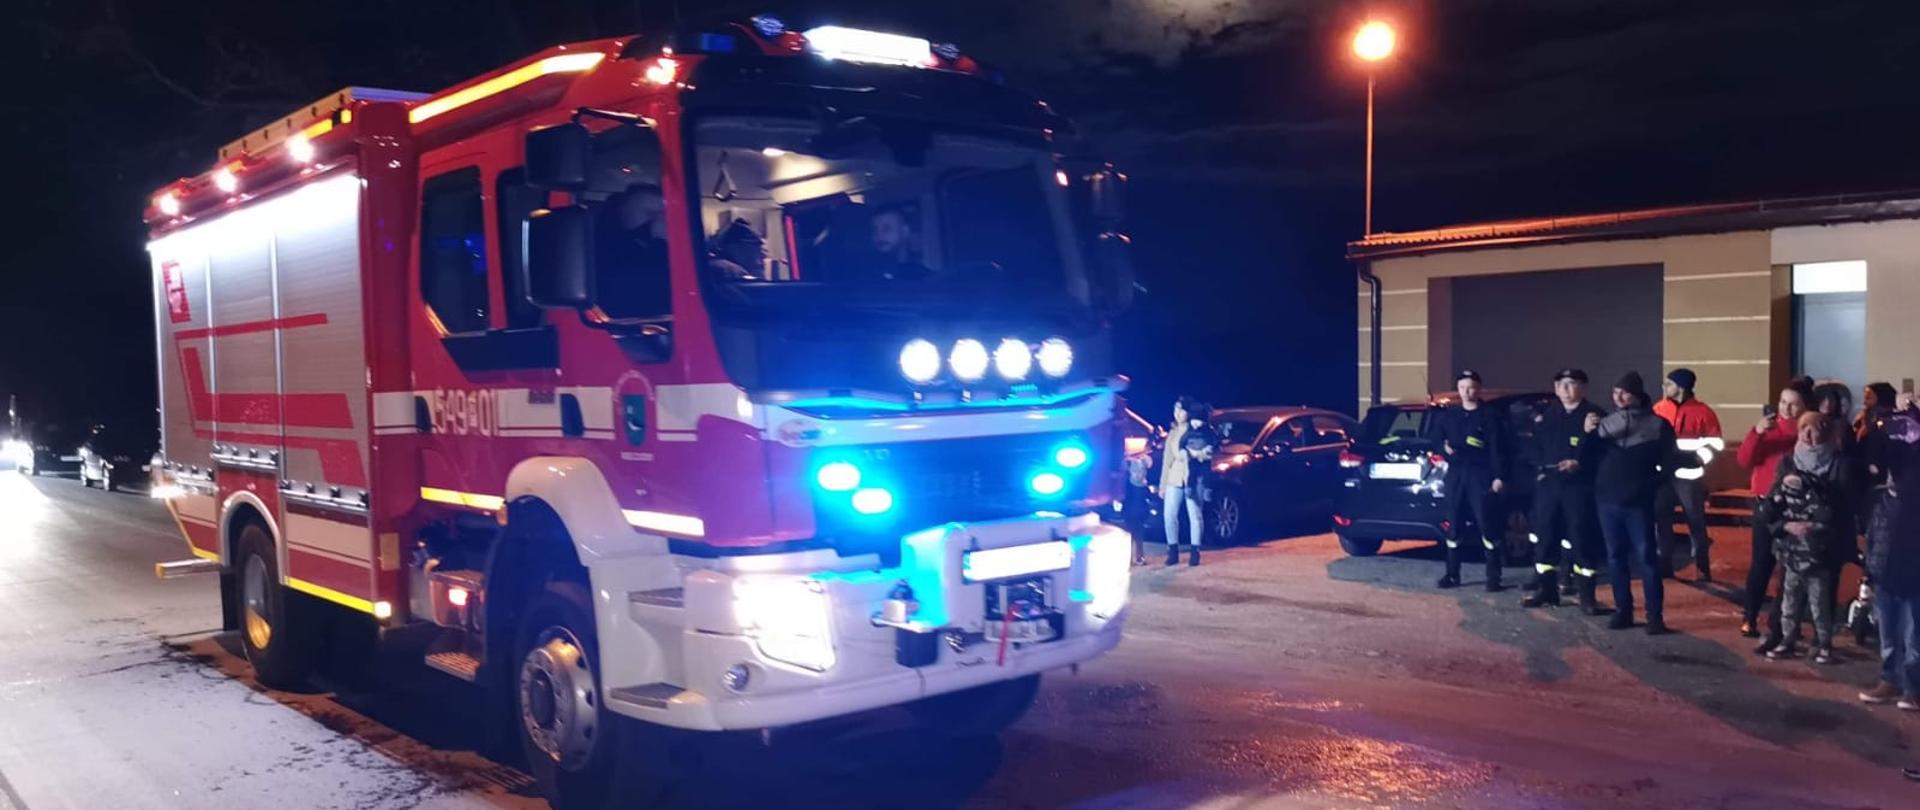 Na pierwszym planie widoczny wóz ratowniczo-gaśniczy przed strażnicą Ochotniczej Straży Pożarnej. Zdjęcie wykonane w porze nocnej na ulicy,